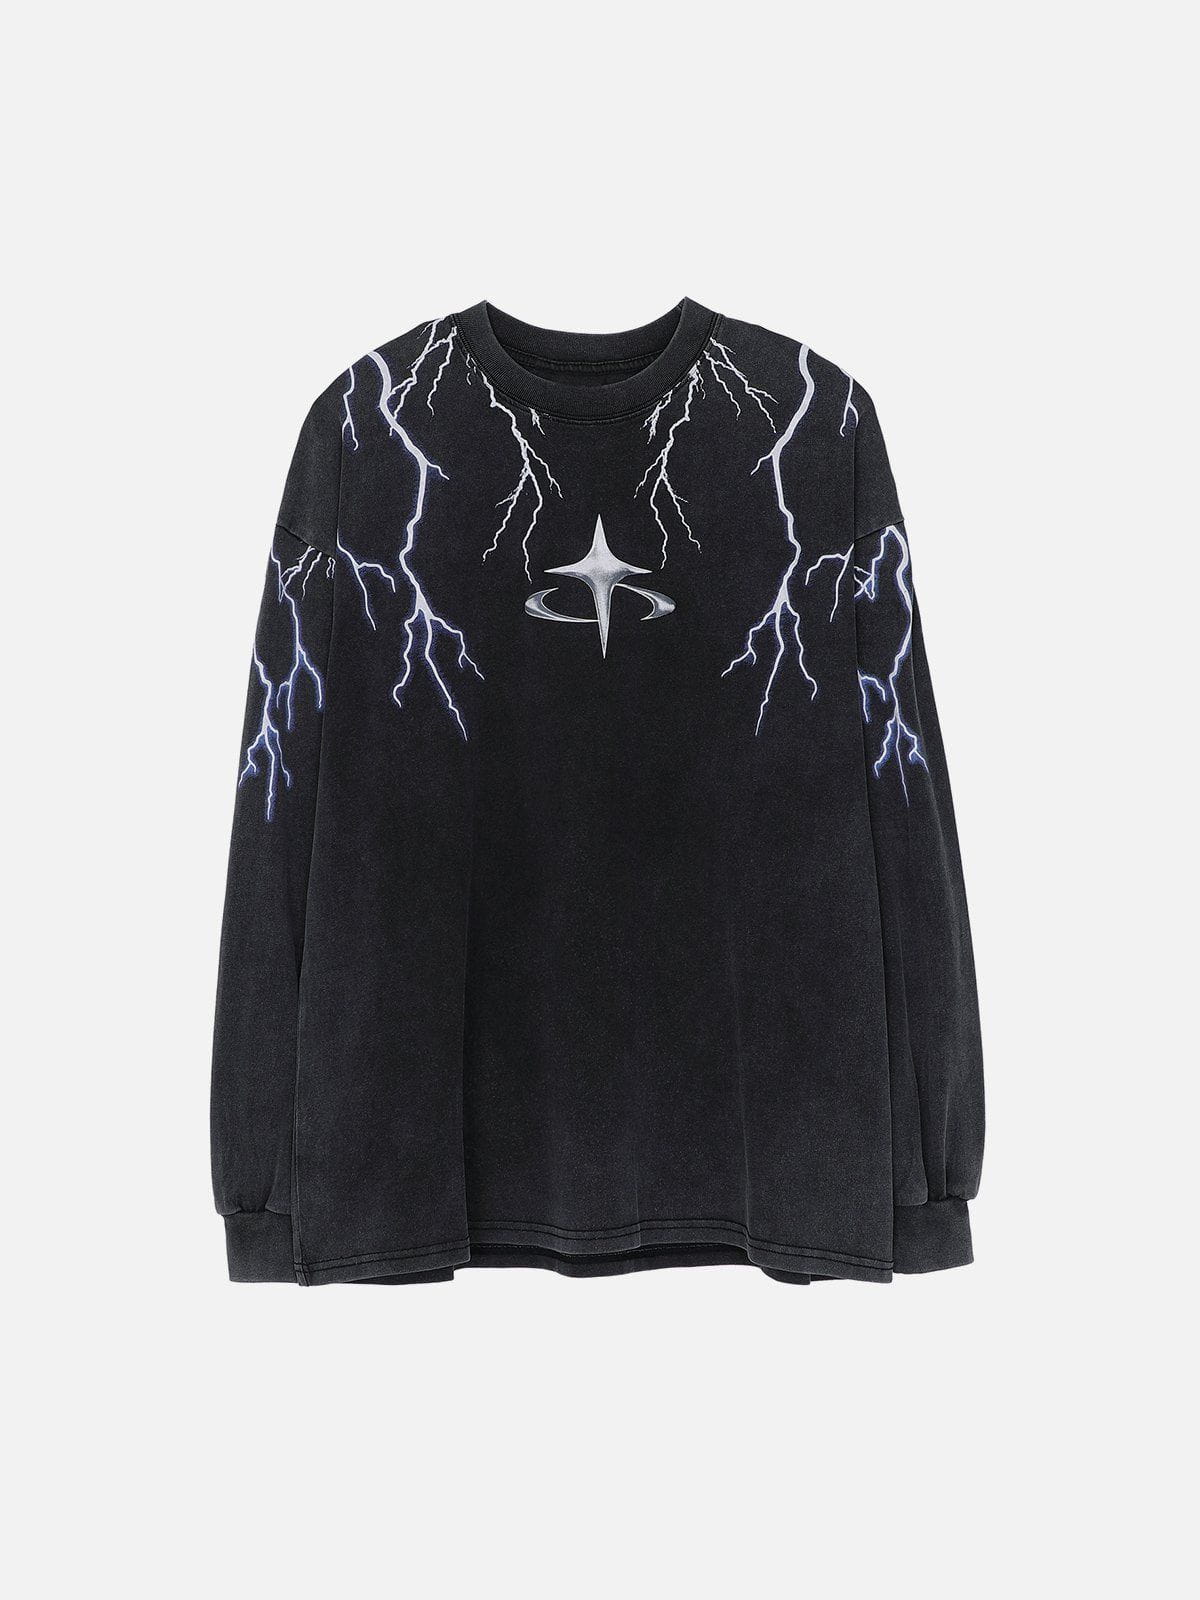 Eprezzy® - Lightning Print Sweatshirt Streetwear Fashion - eprezzy.com